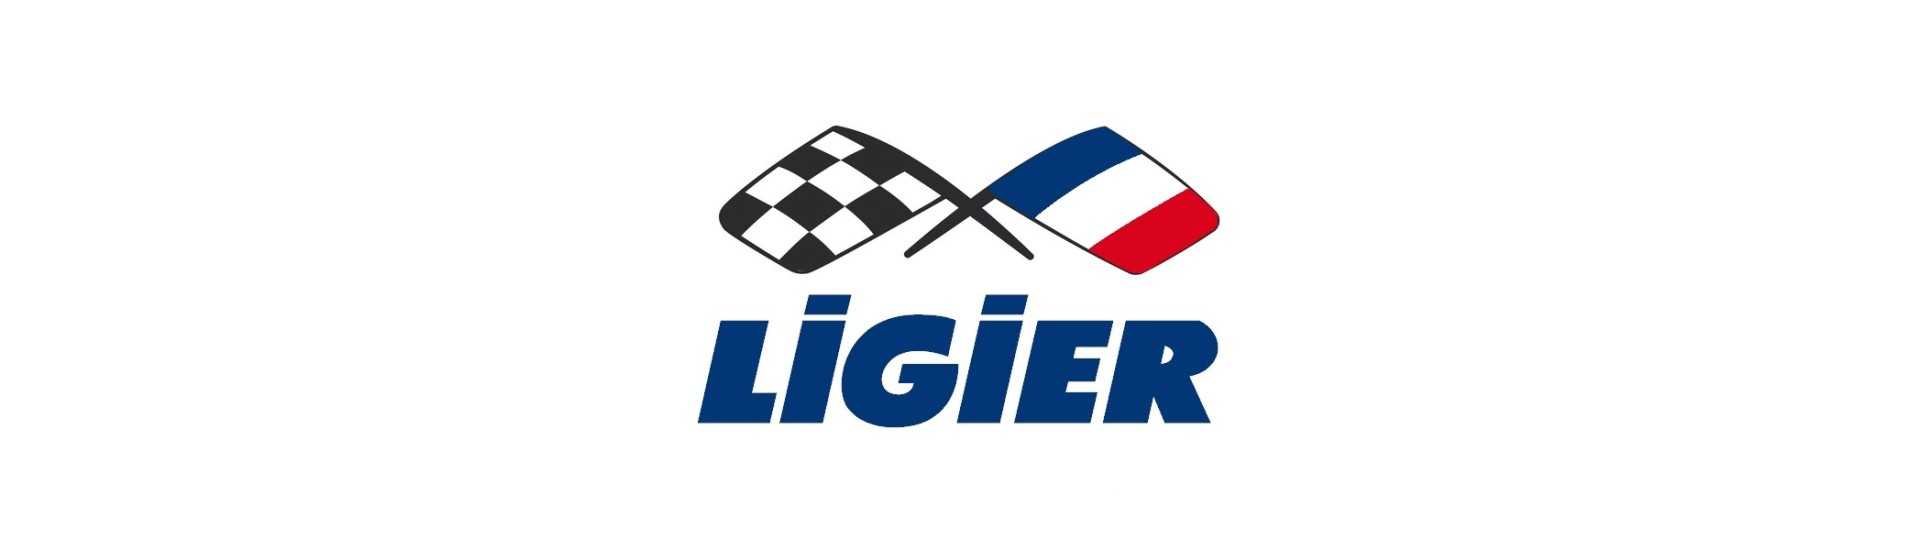 Melhor preço para o carro sem uma permissão Ligier